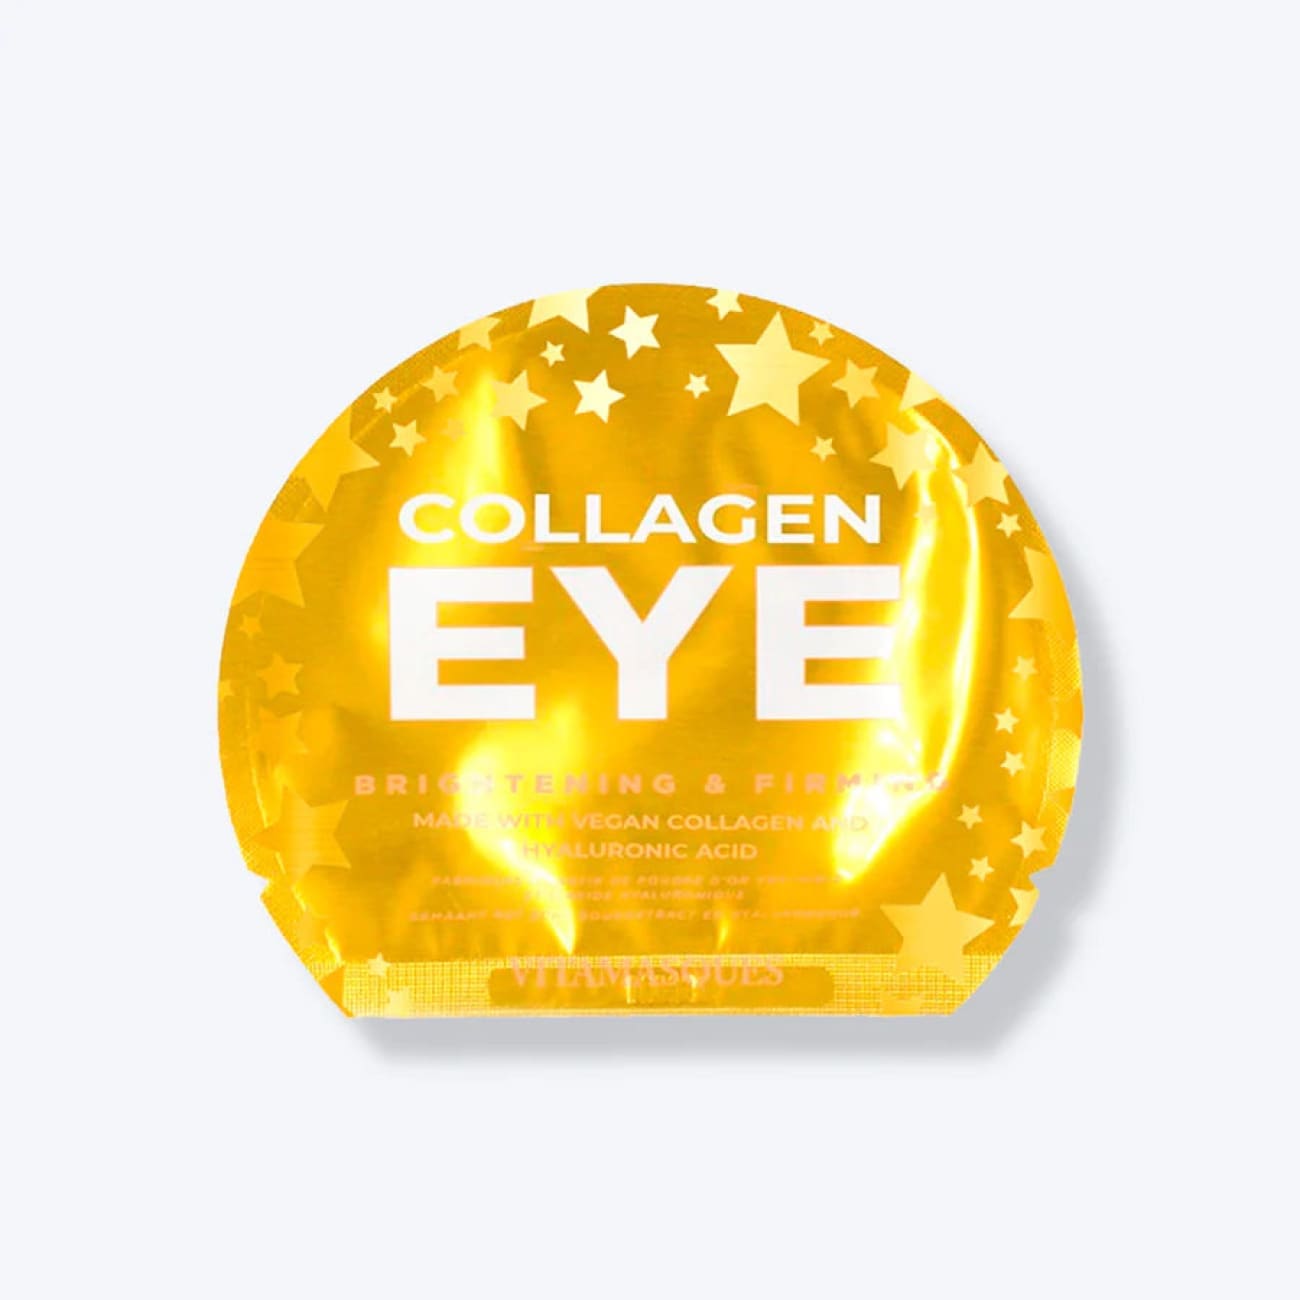 Vegan Collagen Eye Pads Rock Chocs 